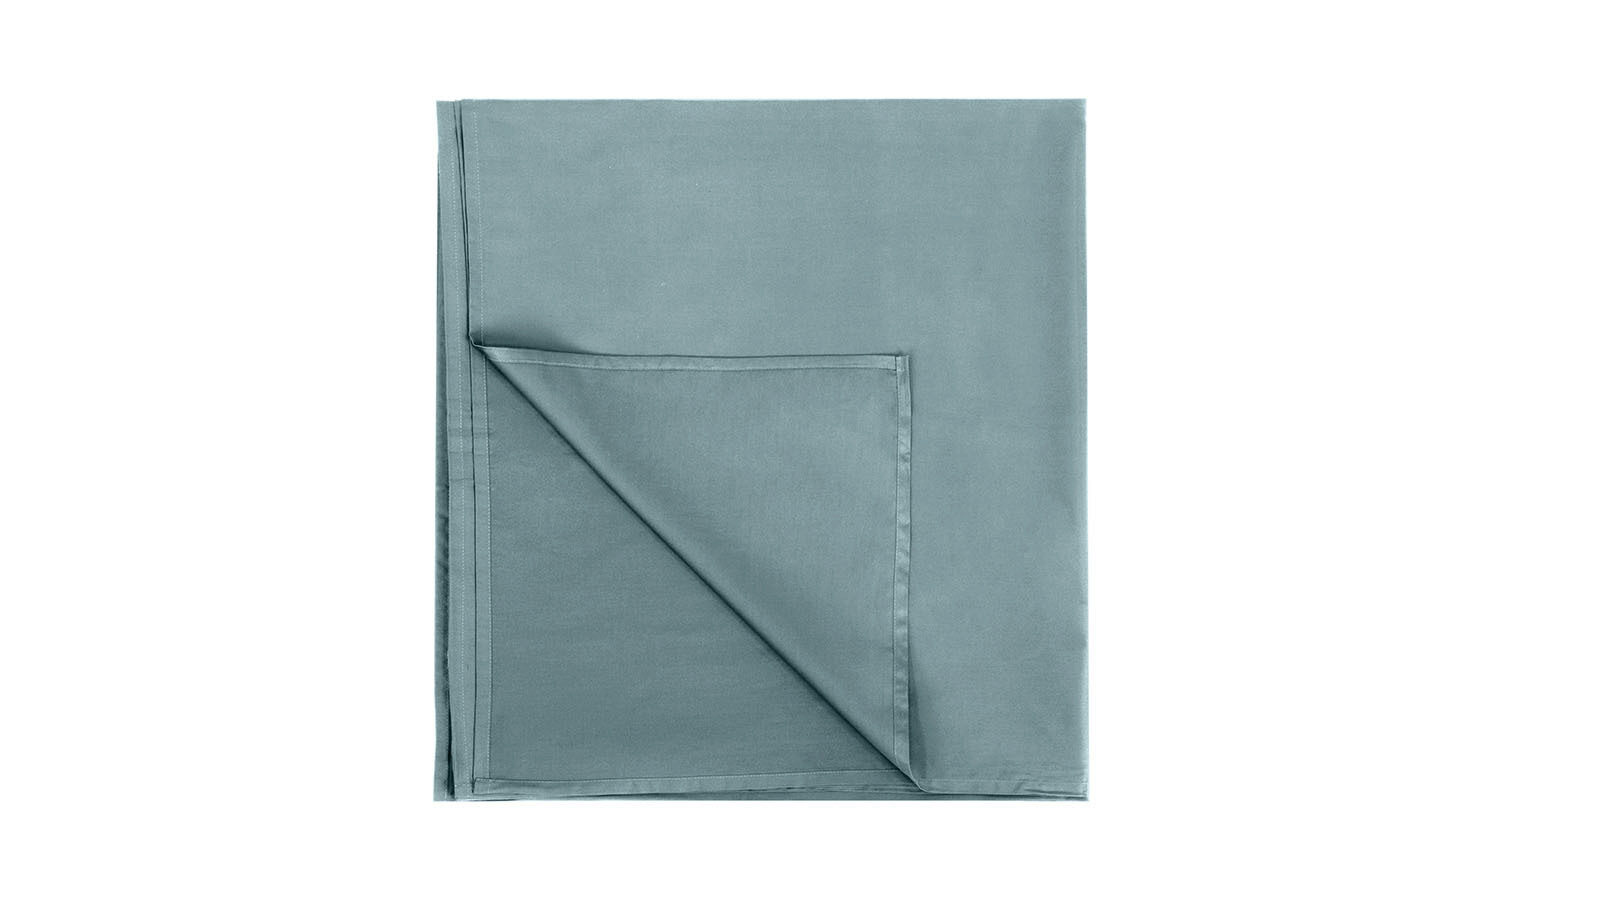 Простыня без резинки Comfort Cotton, цвет: Серо-голубой простыня sms стандарт 00 975 100 80 см голубой 50 шт